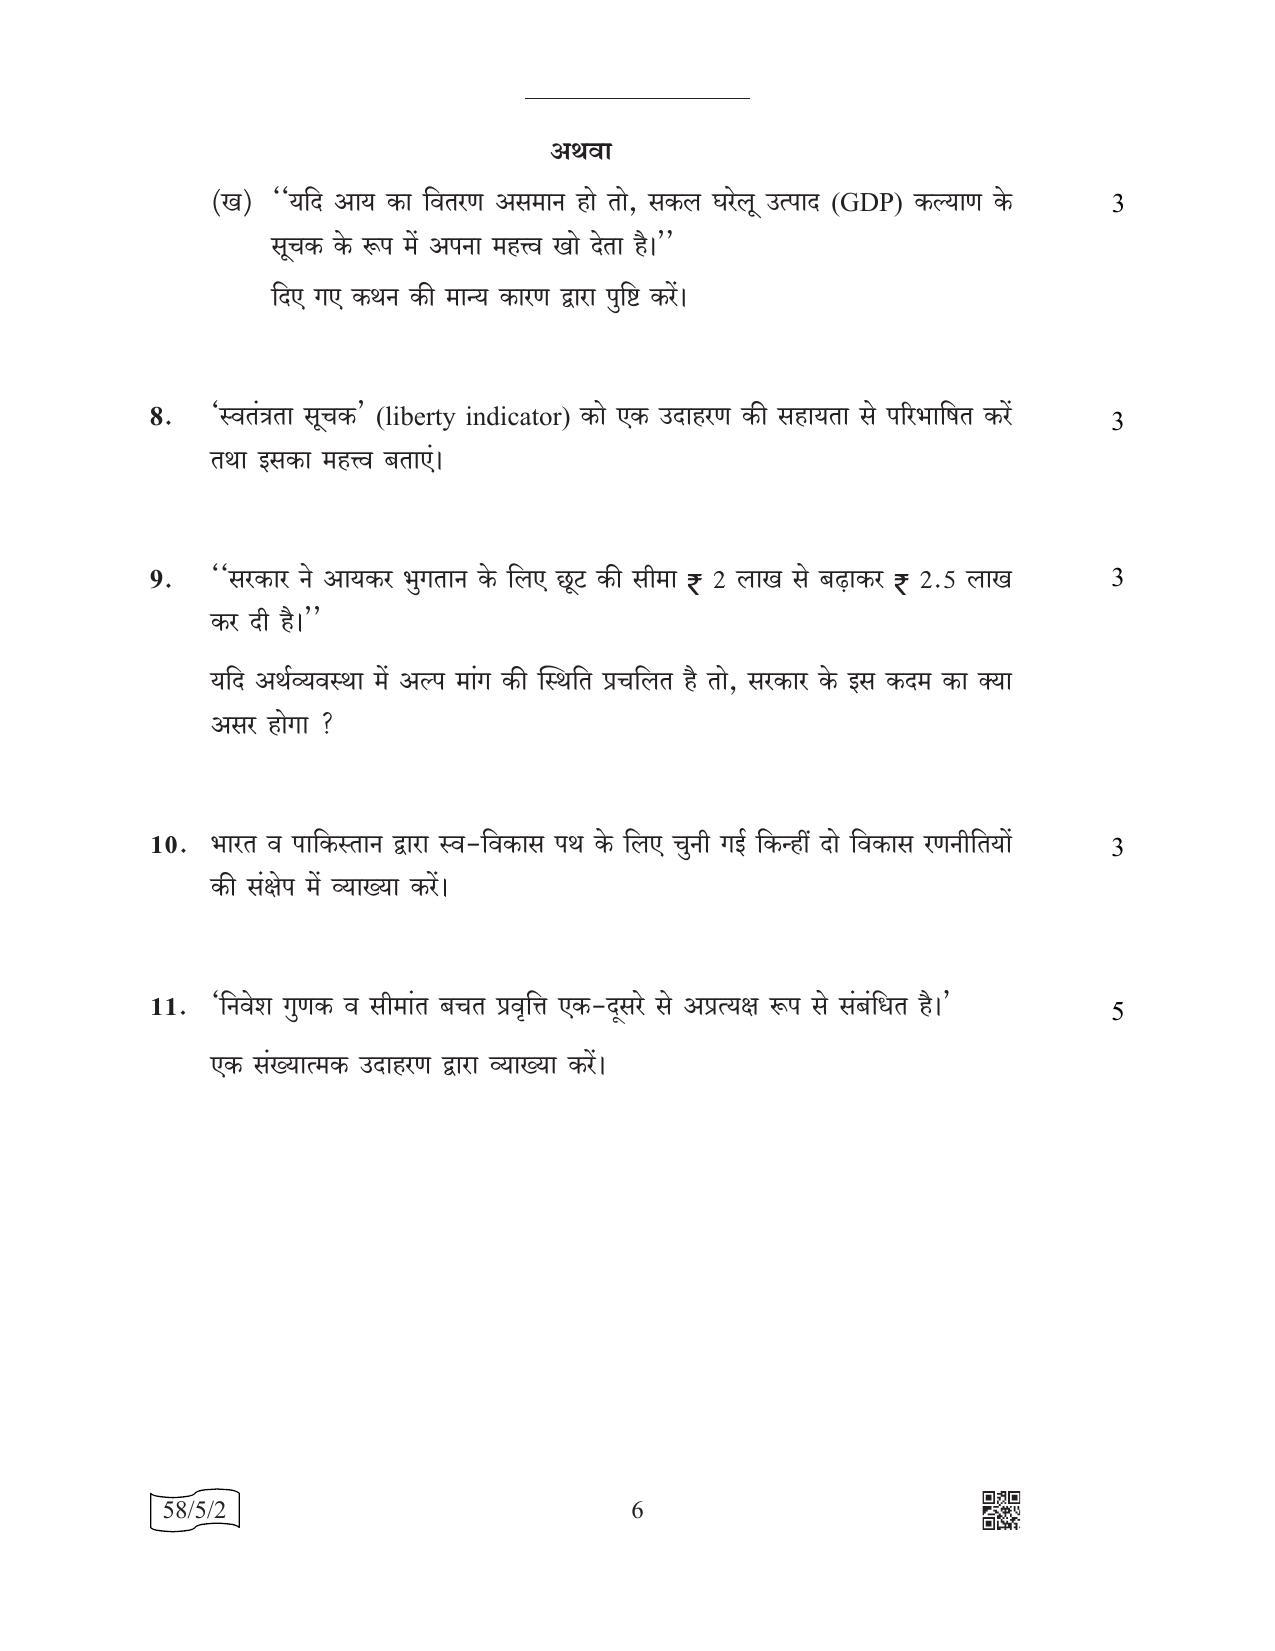 CBSE Class 12 58-5-2 (Economics) 2022 Question Paper - Page 6